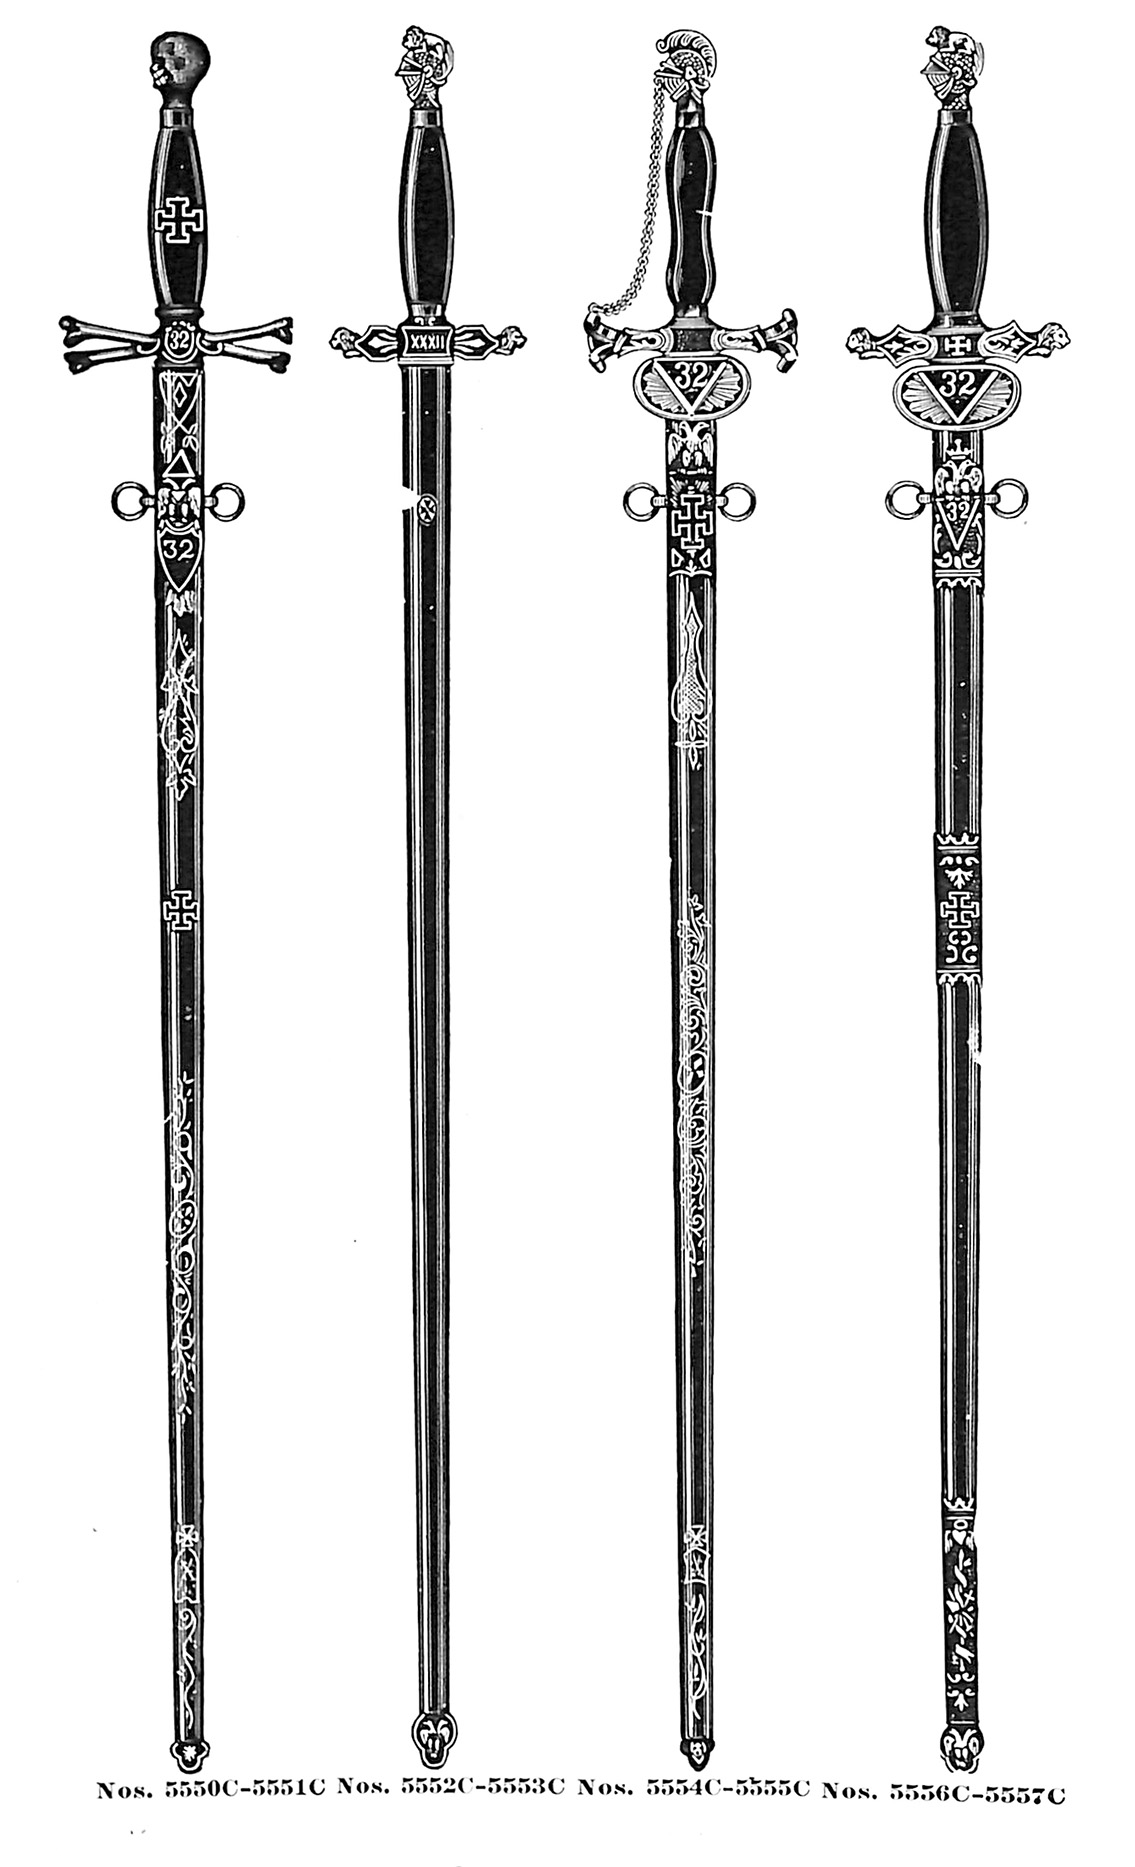 Consistory swords no. 5550C-5557C